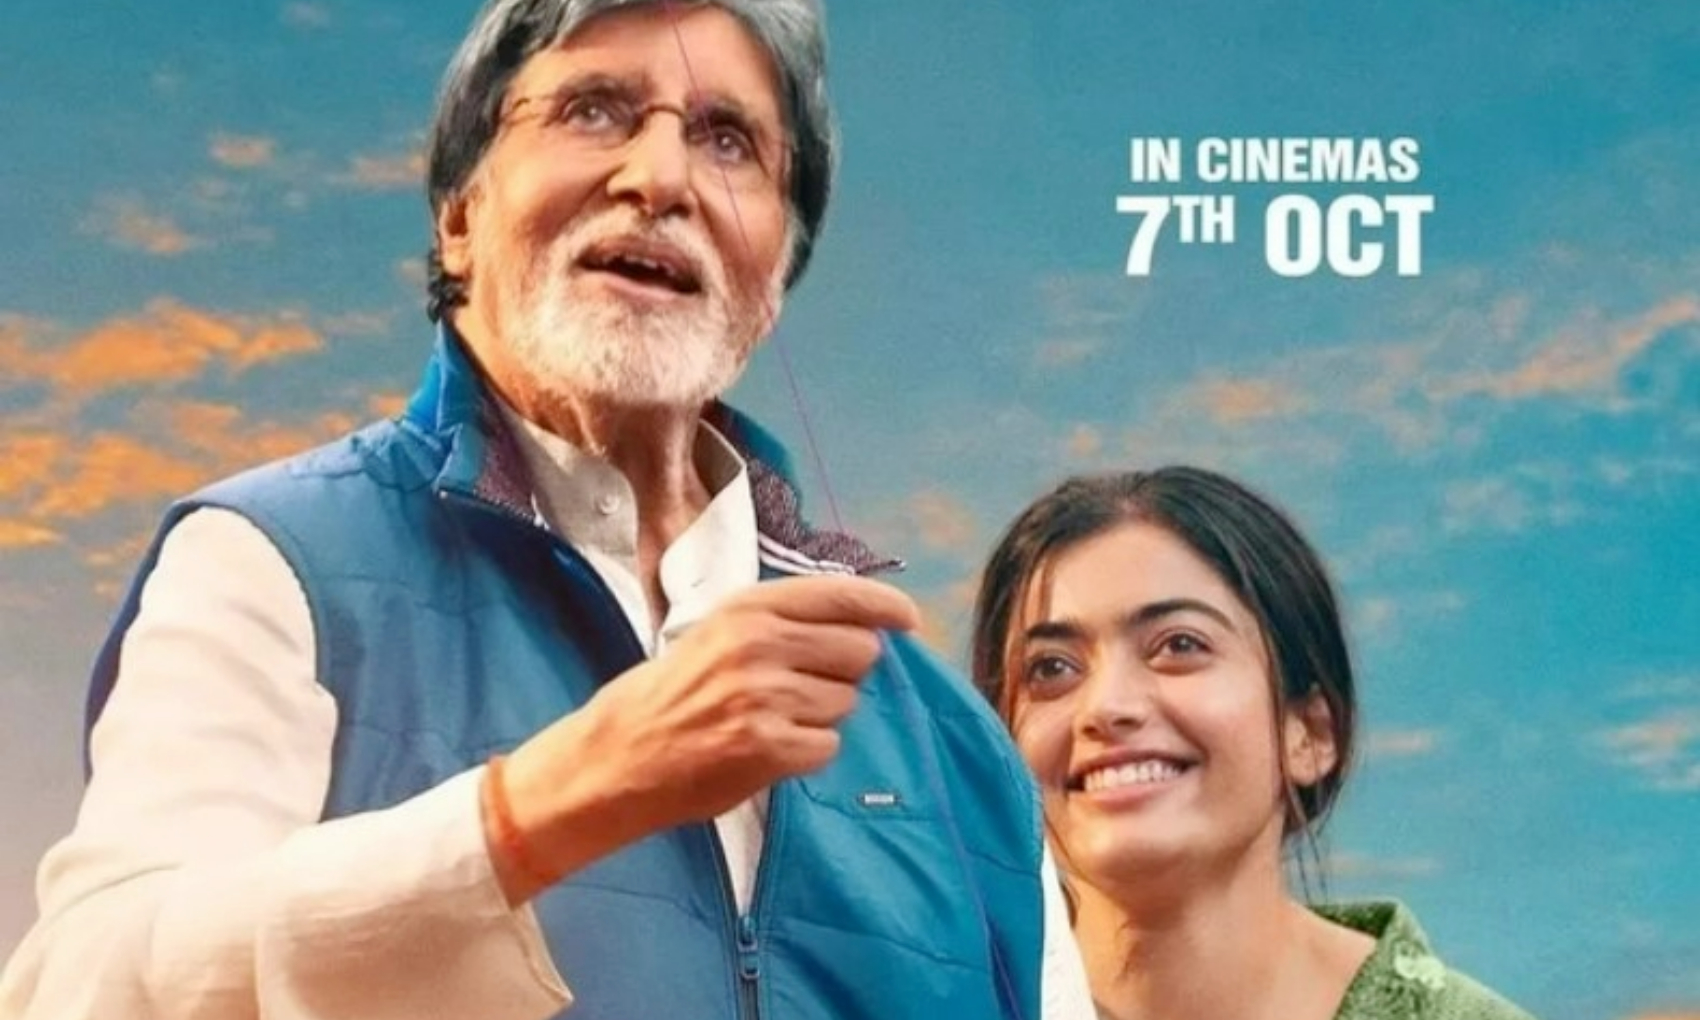 Goodbye: फिल्म ‘गुडबाय‘ के मेकर्स ने दर्शकों को दी बड़ी खुशखबरी, ओपनिंग डे पर केवल इतने रुपये में मिलेगी टिकट